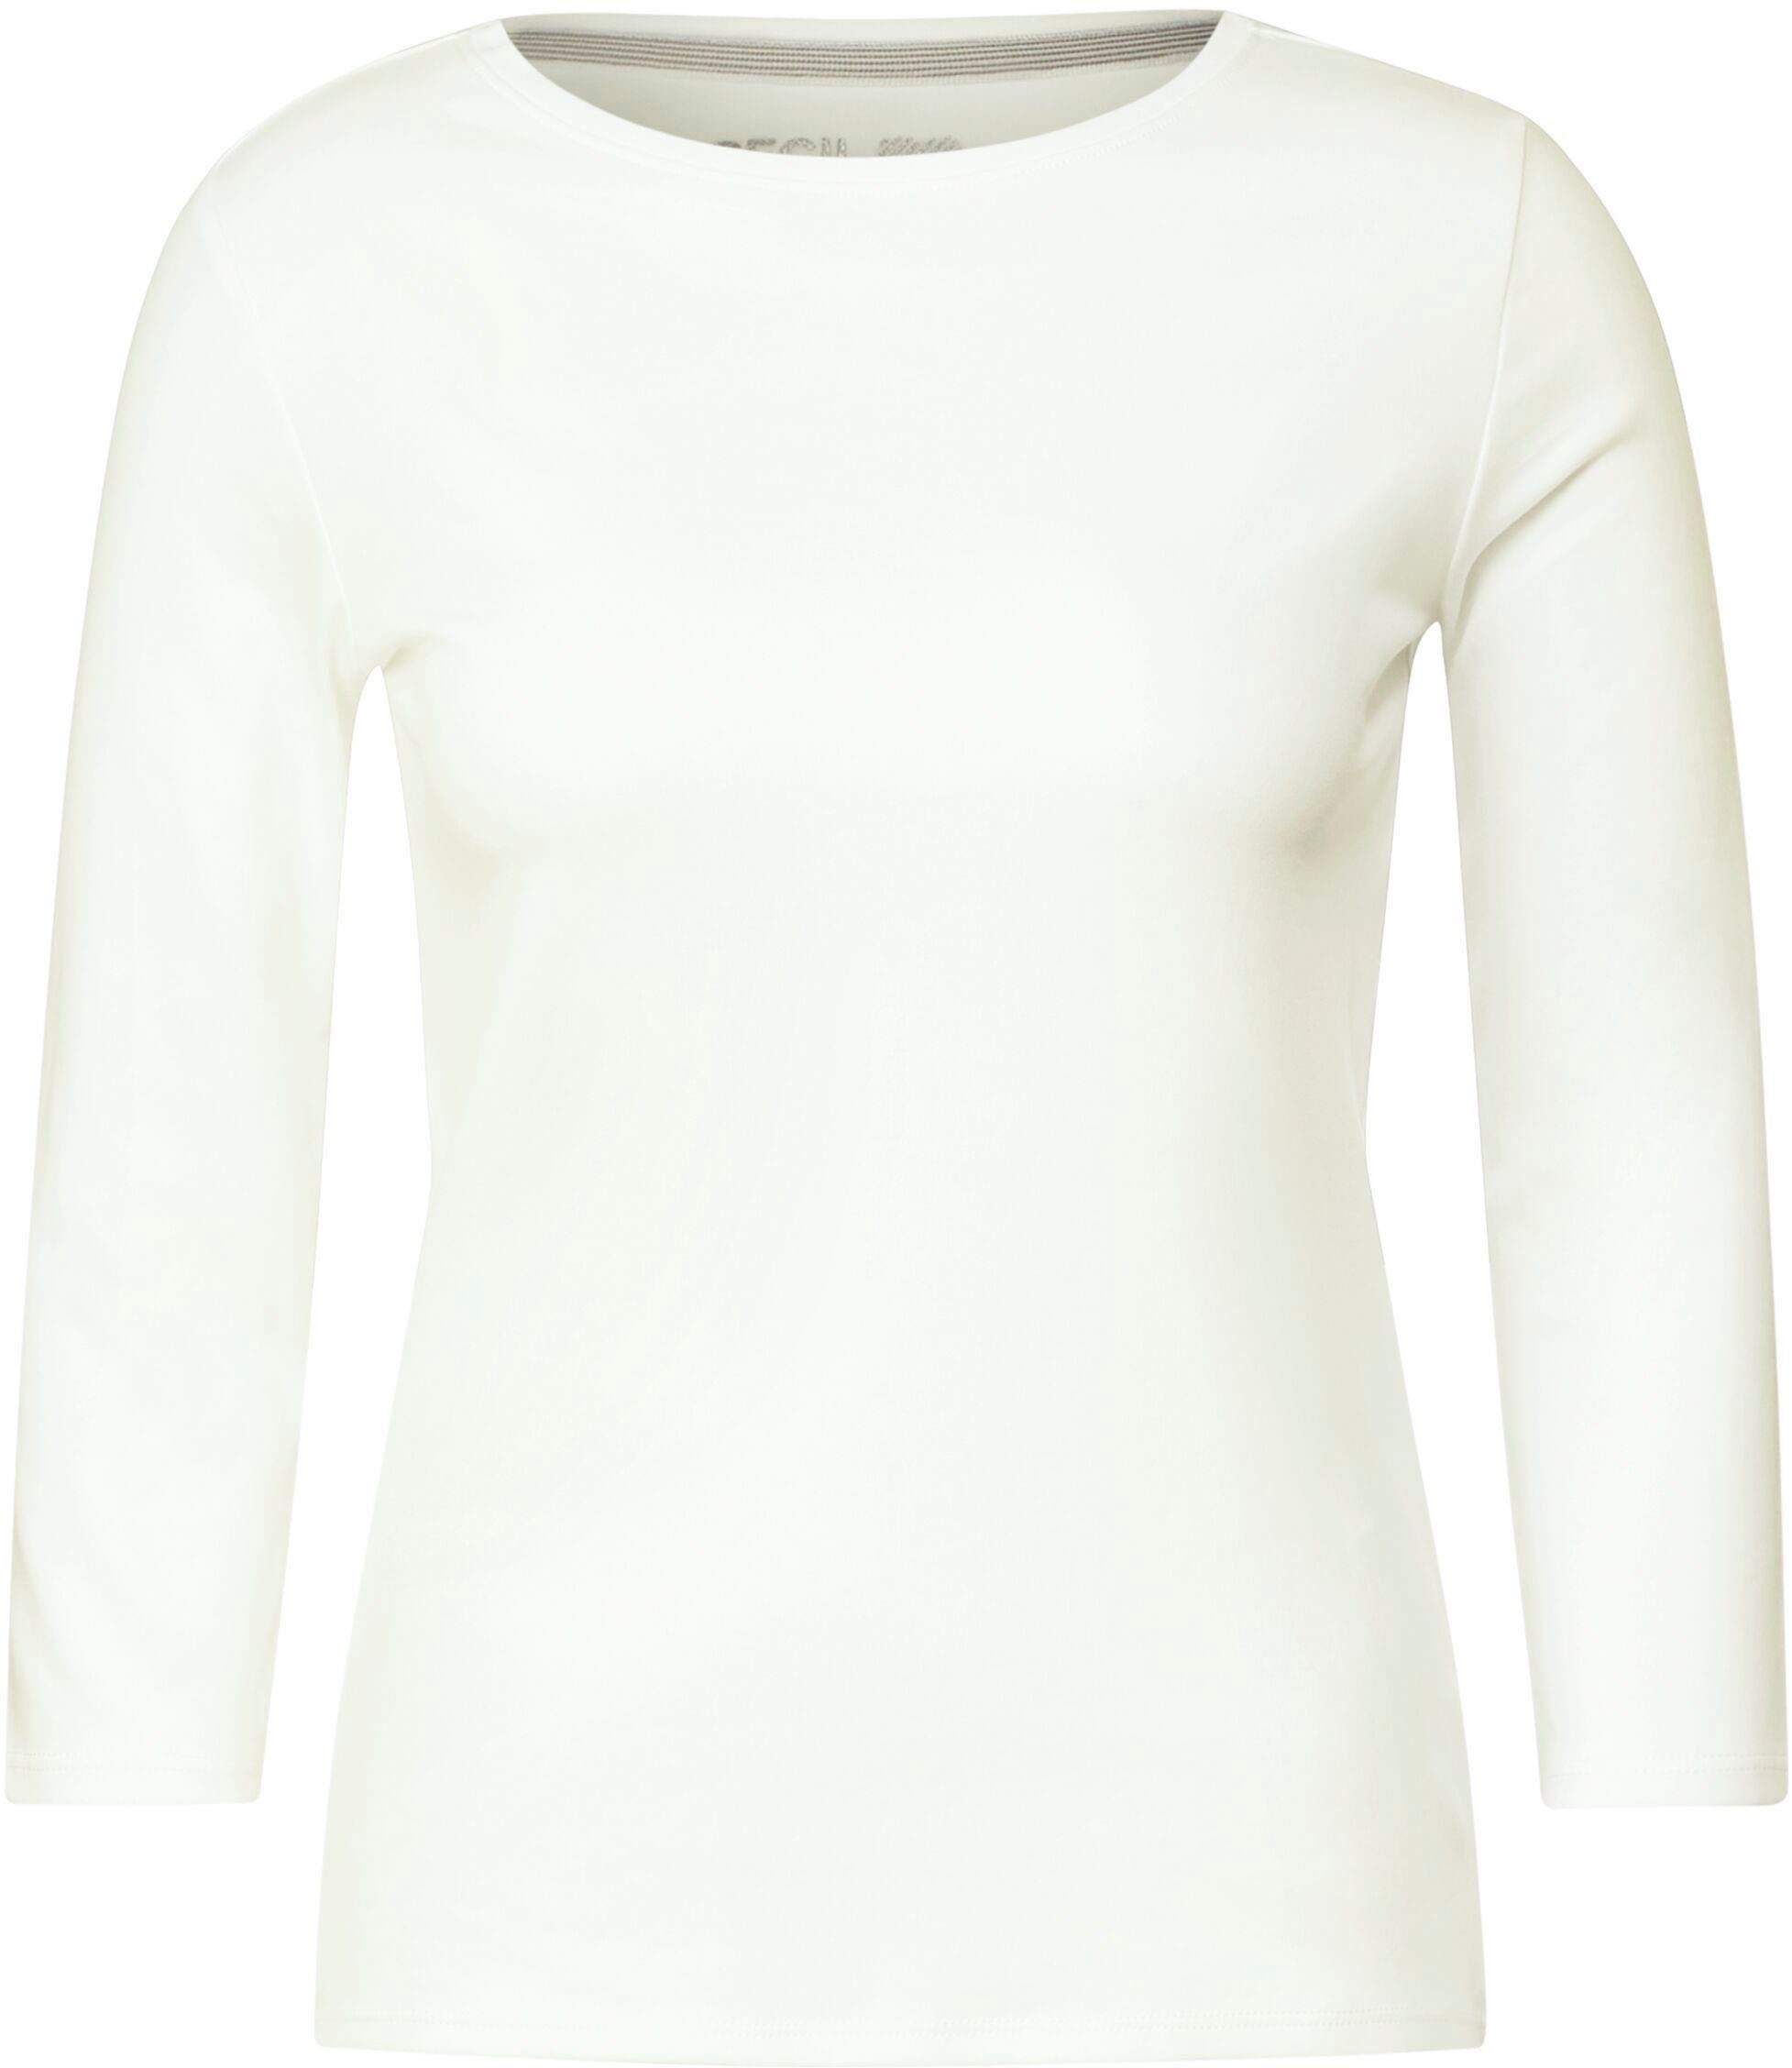 Ausschnitt vanilla Cecil mit hohem white 3/4-Arm-Shirt